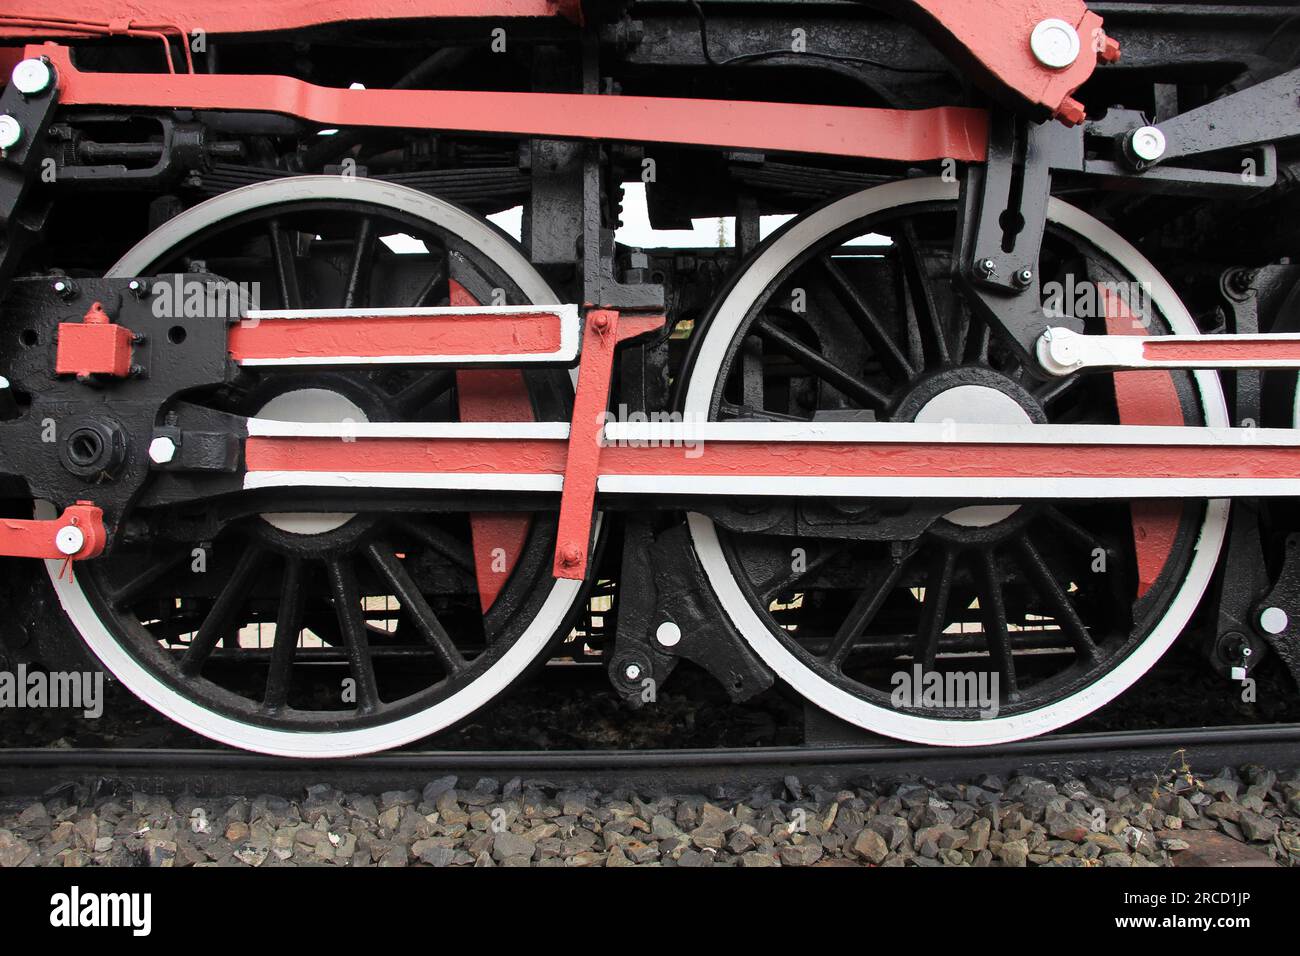 Détail des roues métalliques de la locomotive de train. Les roues sont peintes en noir, blanc et rouge. Banque D'Images